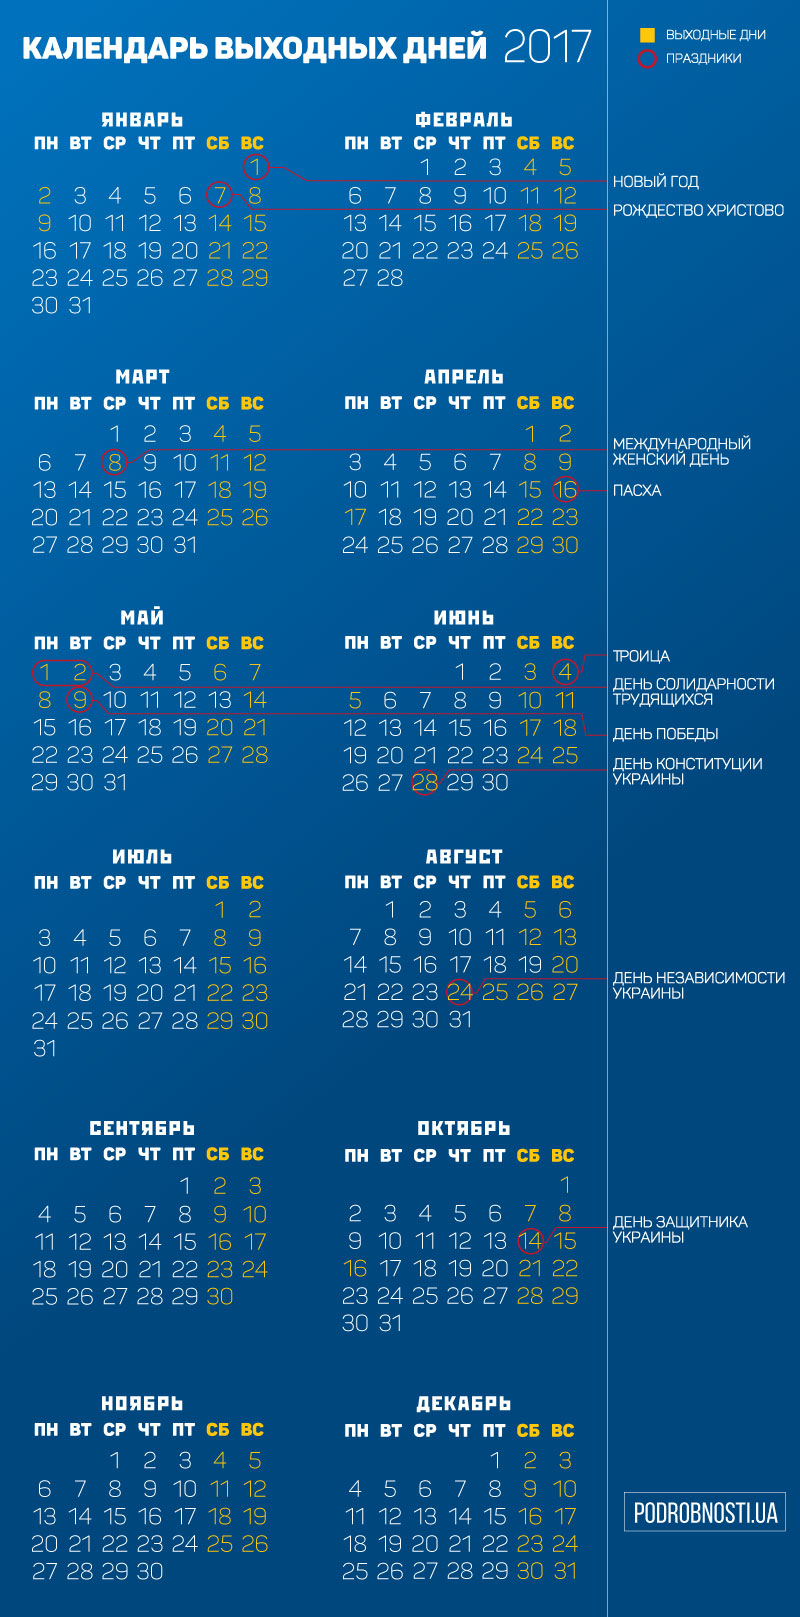 c 31 грудня 2016 по 02 січень 2017 (всього 3) Новий рік;   c 7 по 9 січня (всього 3) Різдво;   c 15 по 17 квітня (всього 3) Великдень;   c 29 квітня по 02 травня (всього 4 Першотравень;   з 3 по 5 червня (всього 3) Трійця;   з 14 пo 16 жовтня (всього 3) День захисника України;